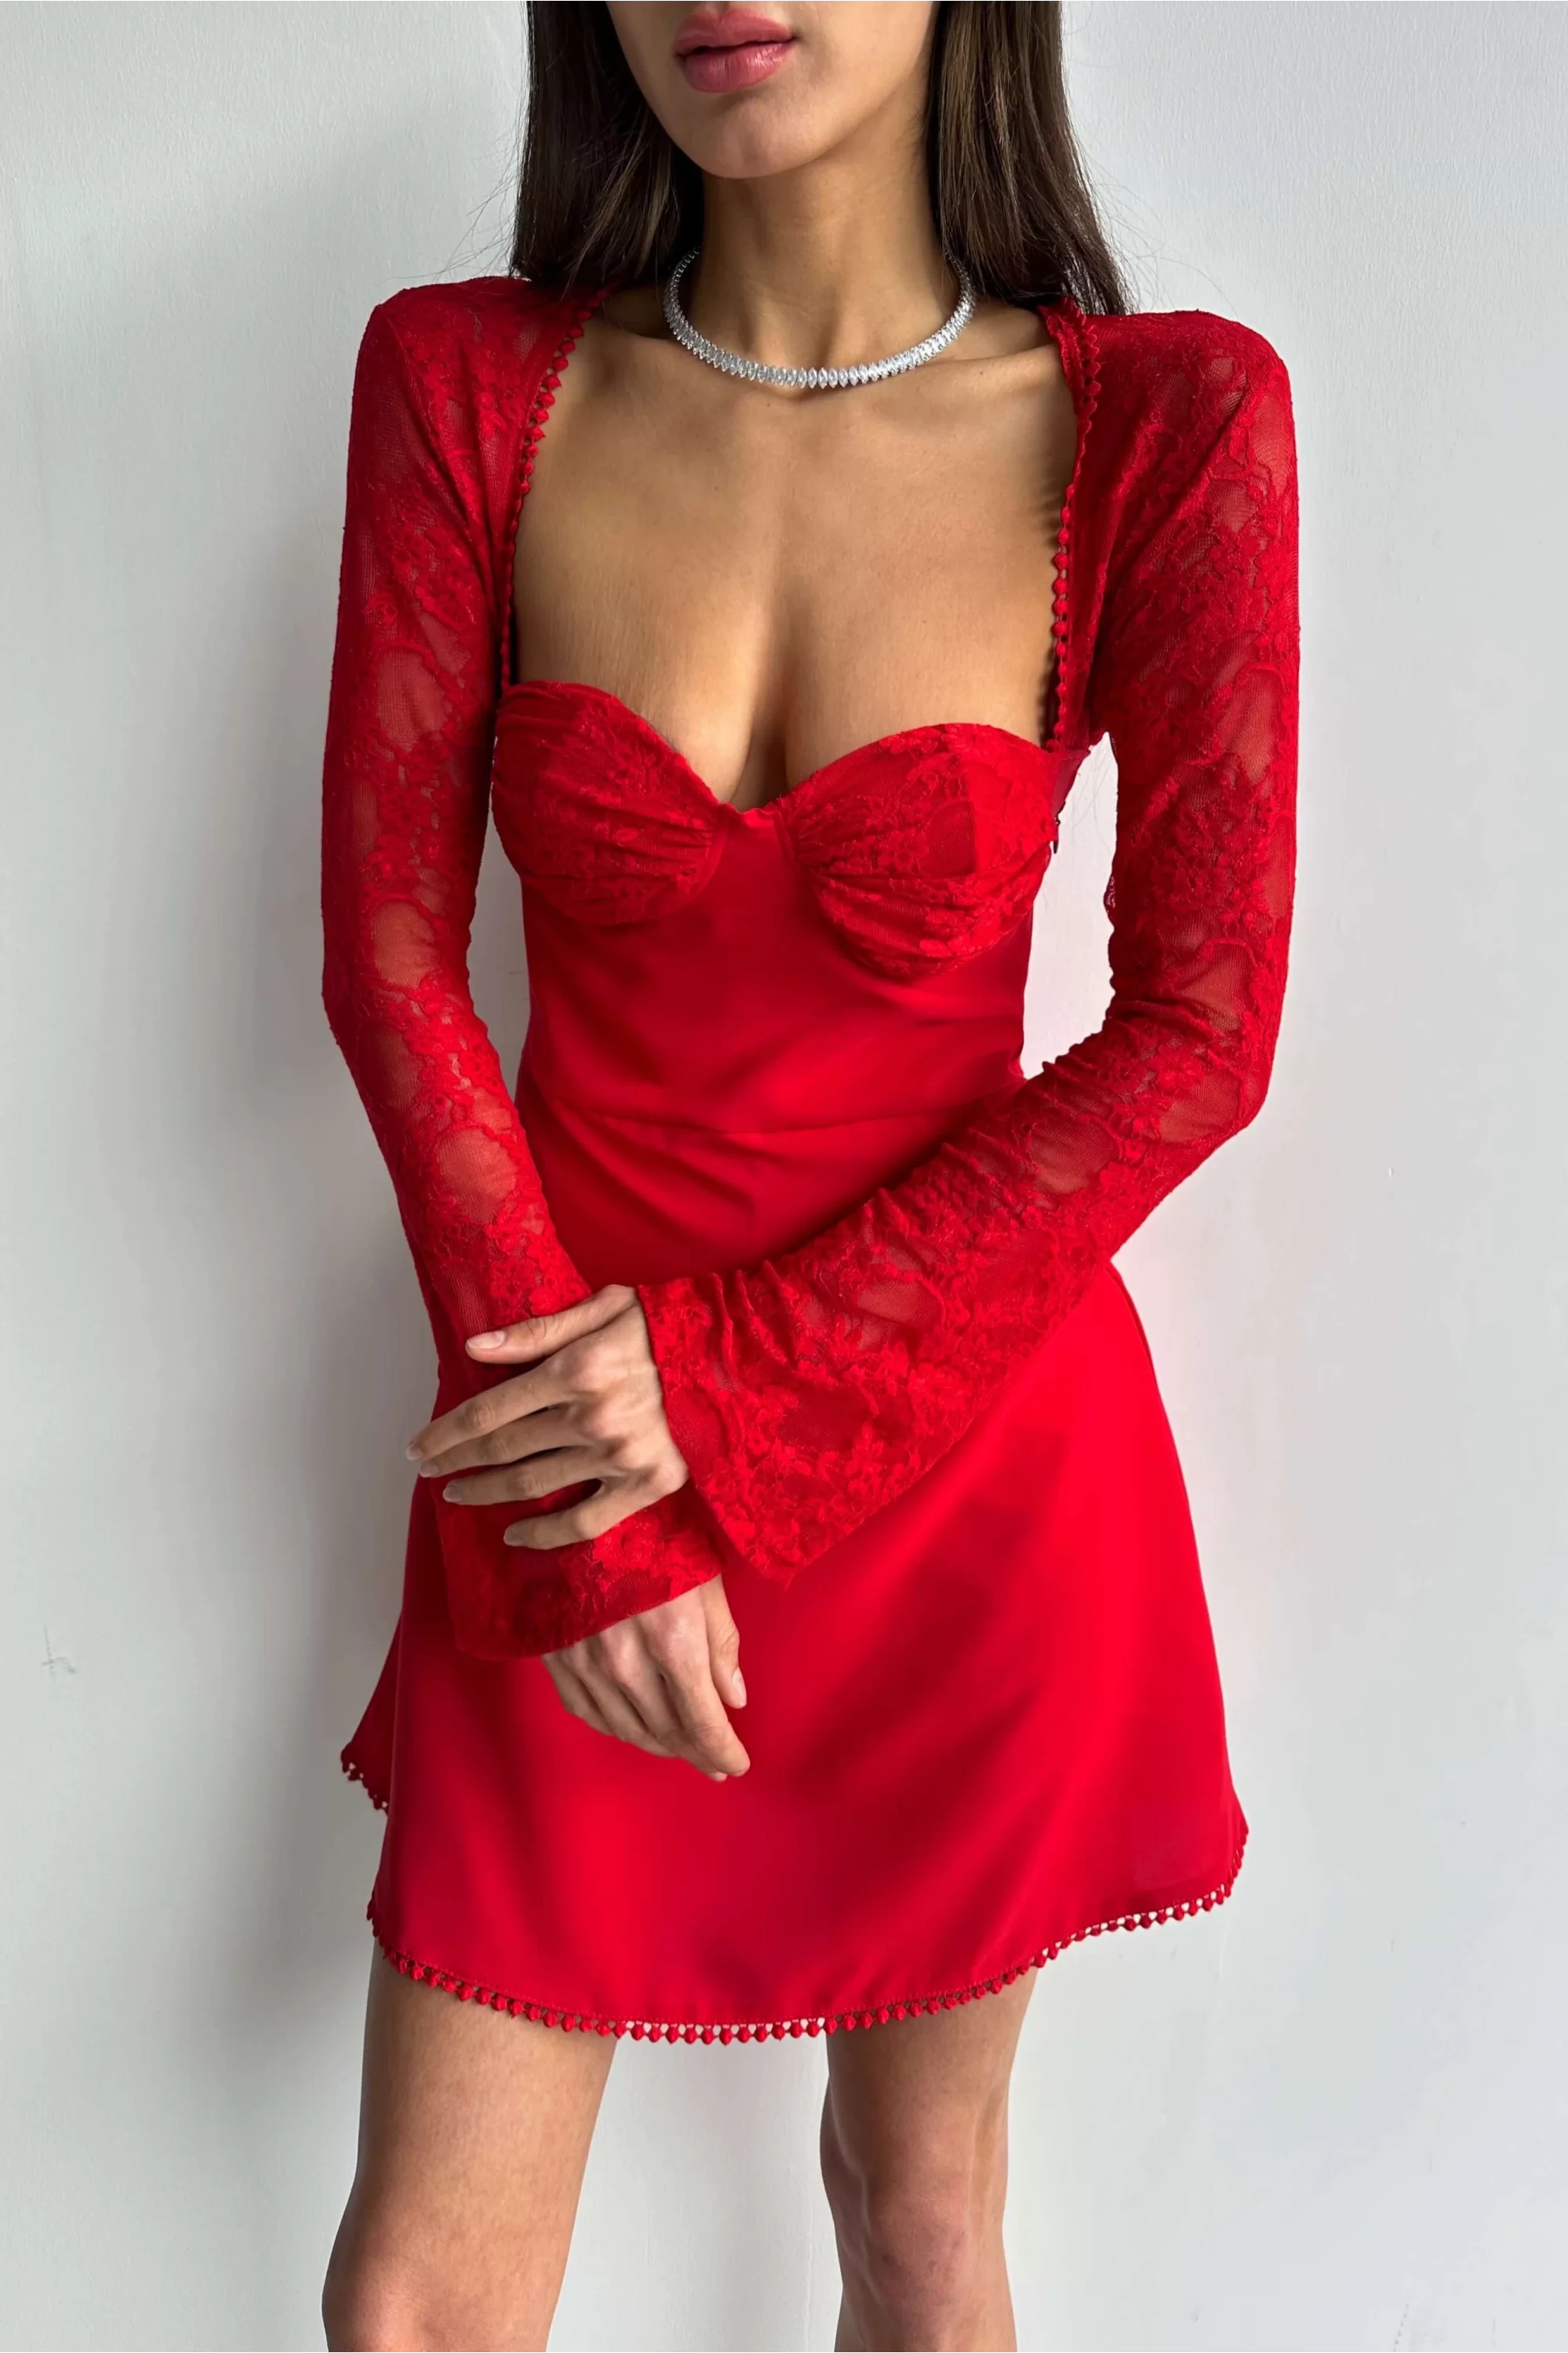 Kadın Kırmızı Dantel Detay Elbise 1026-221477